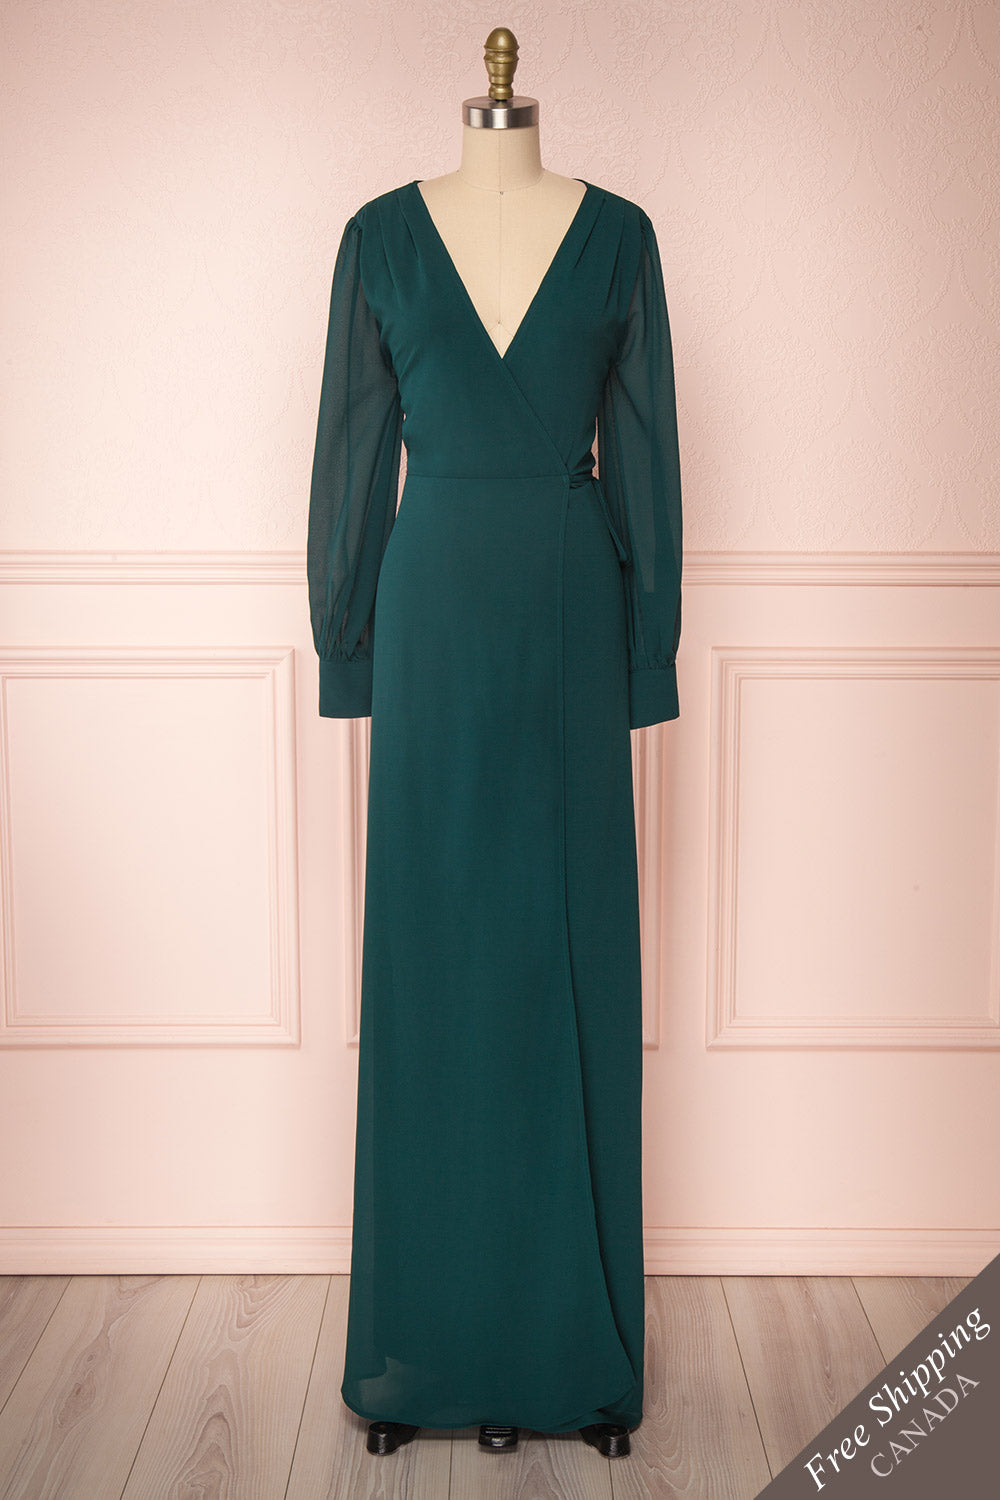 Aurelie Émeraude Green Maxi Wrap Dress | Boutique 1861 front view 